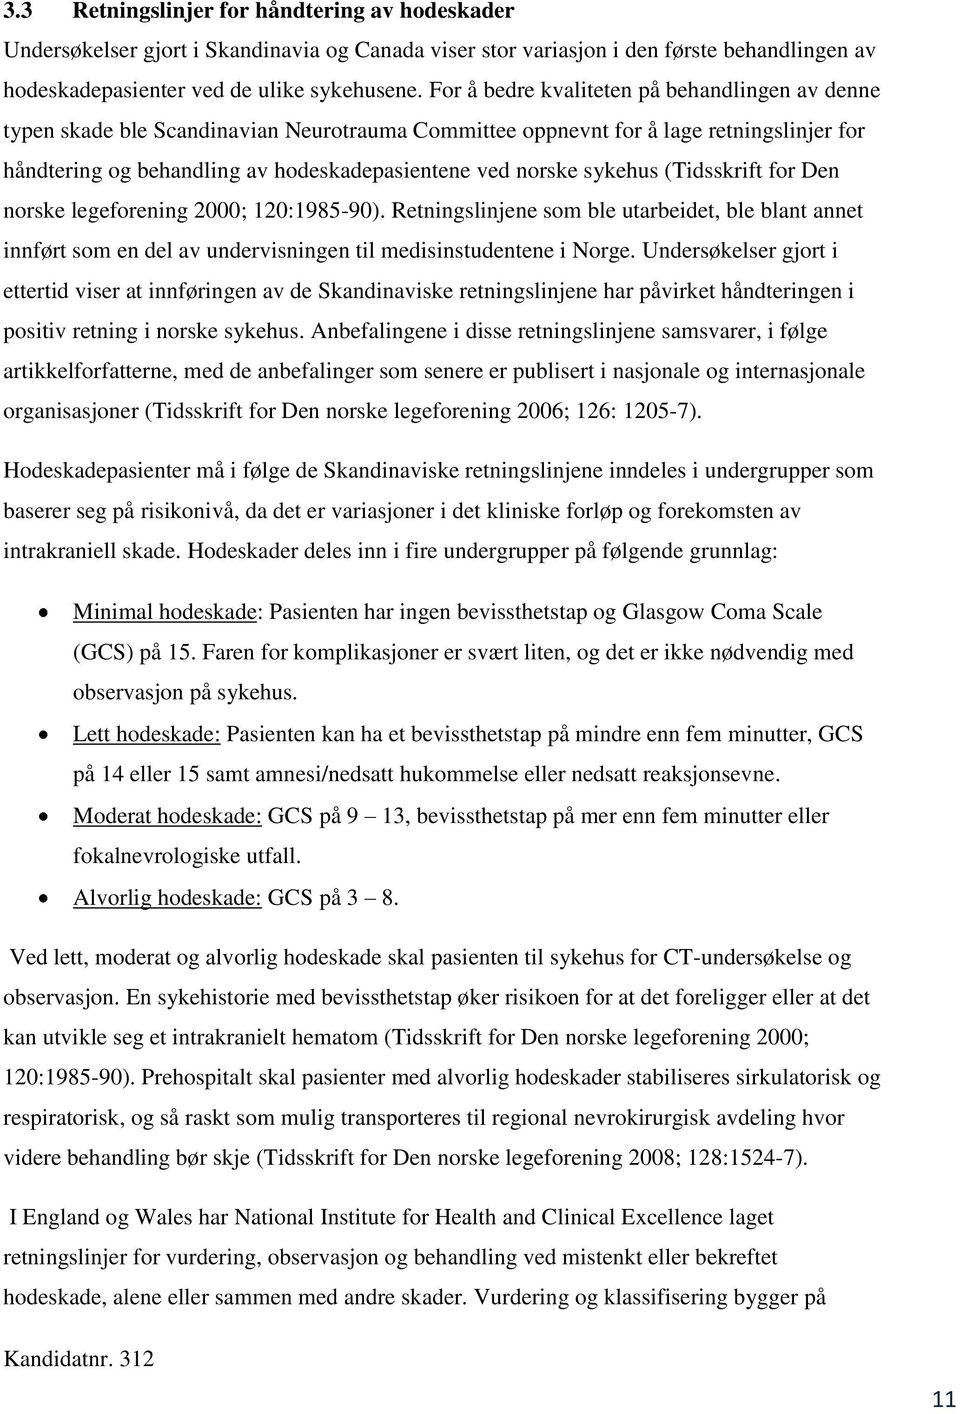 sykehus (Tidsskrift for Den norske legeforening 2000; 120:1985-90). Retningslinjene som ble utarbeidet, ble blant annet innført som en del av undervisningen til medisinstudentene i Norge.